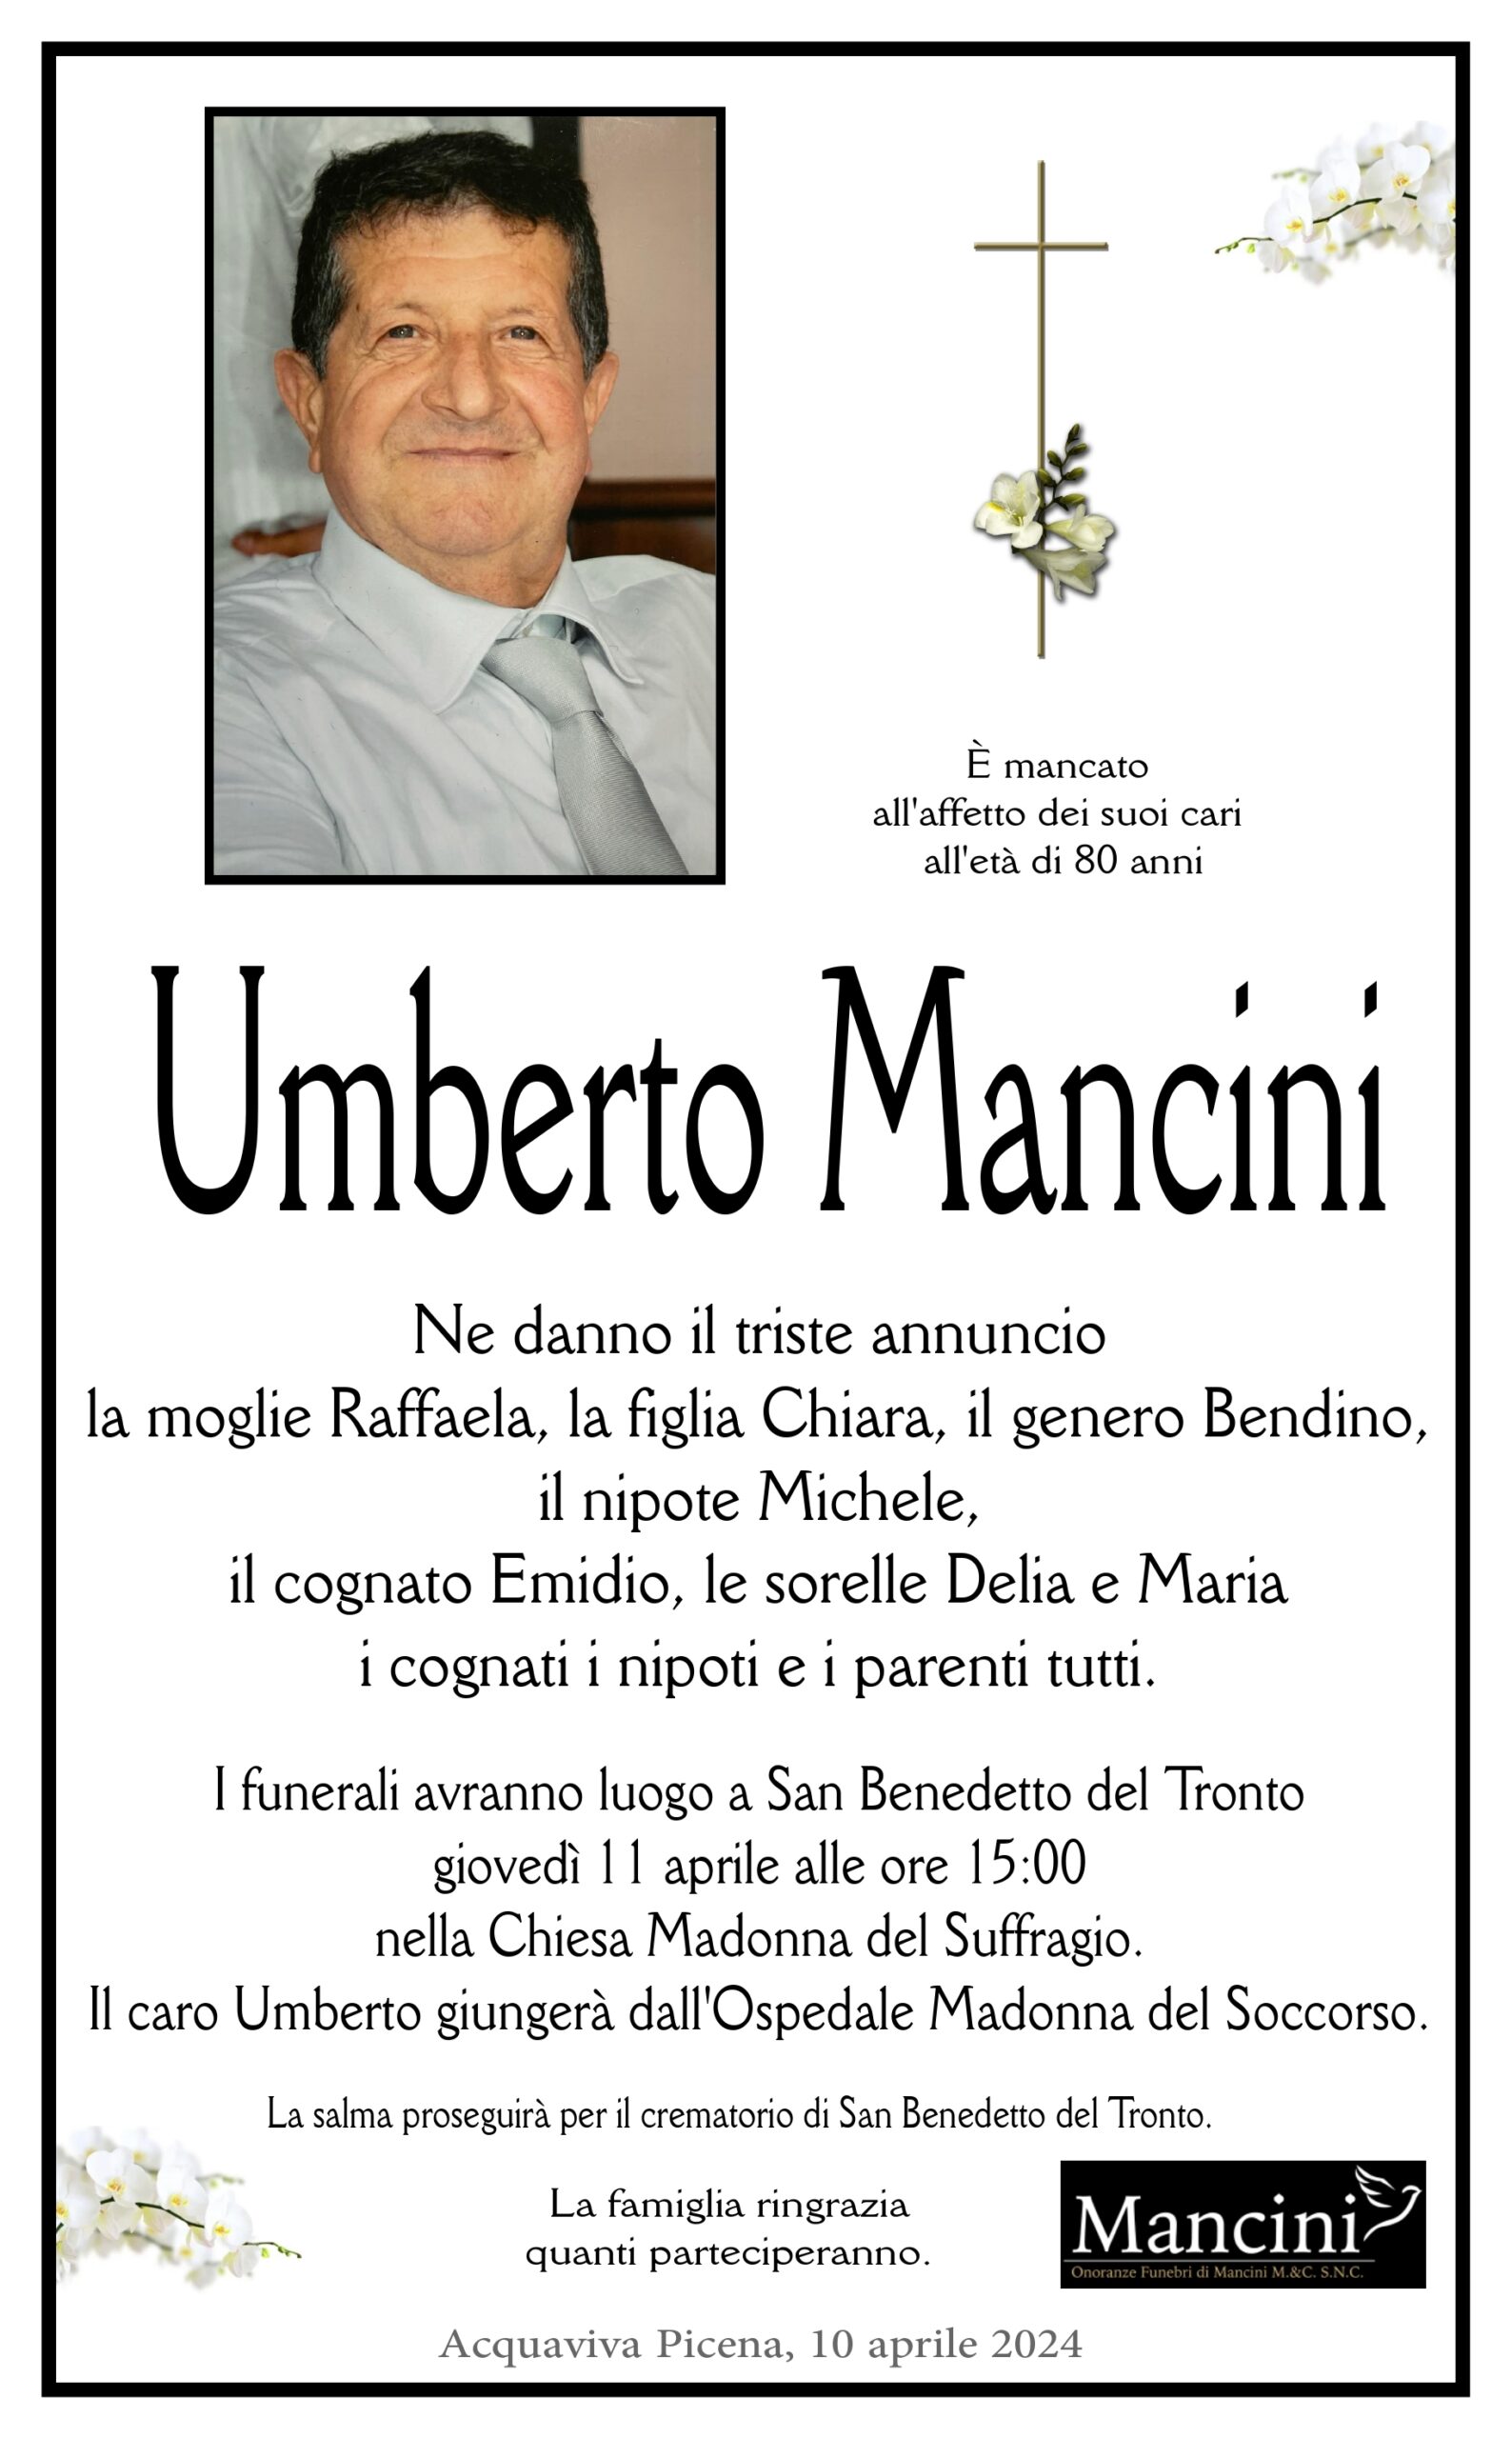 Umberto Mancini